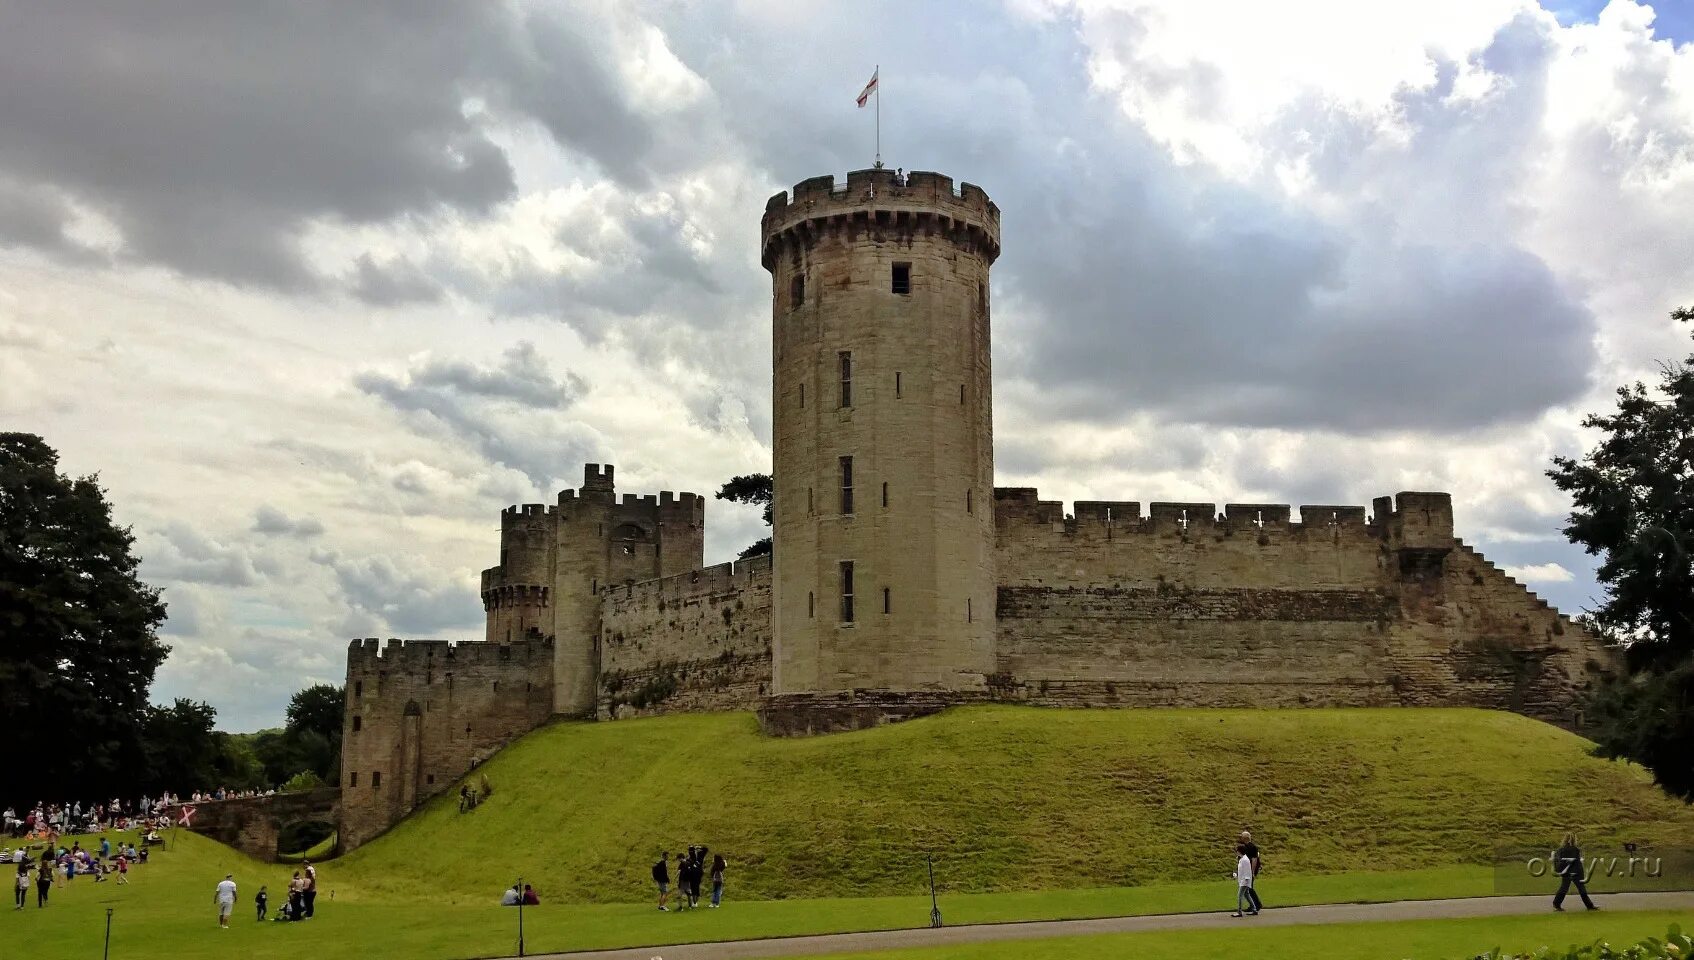 Англия 11 12 веке. Замки Англии XII век. Замок Англия 13 век. Замок 15 века в Англии. Замок 12 века в Англии.